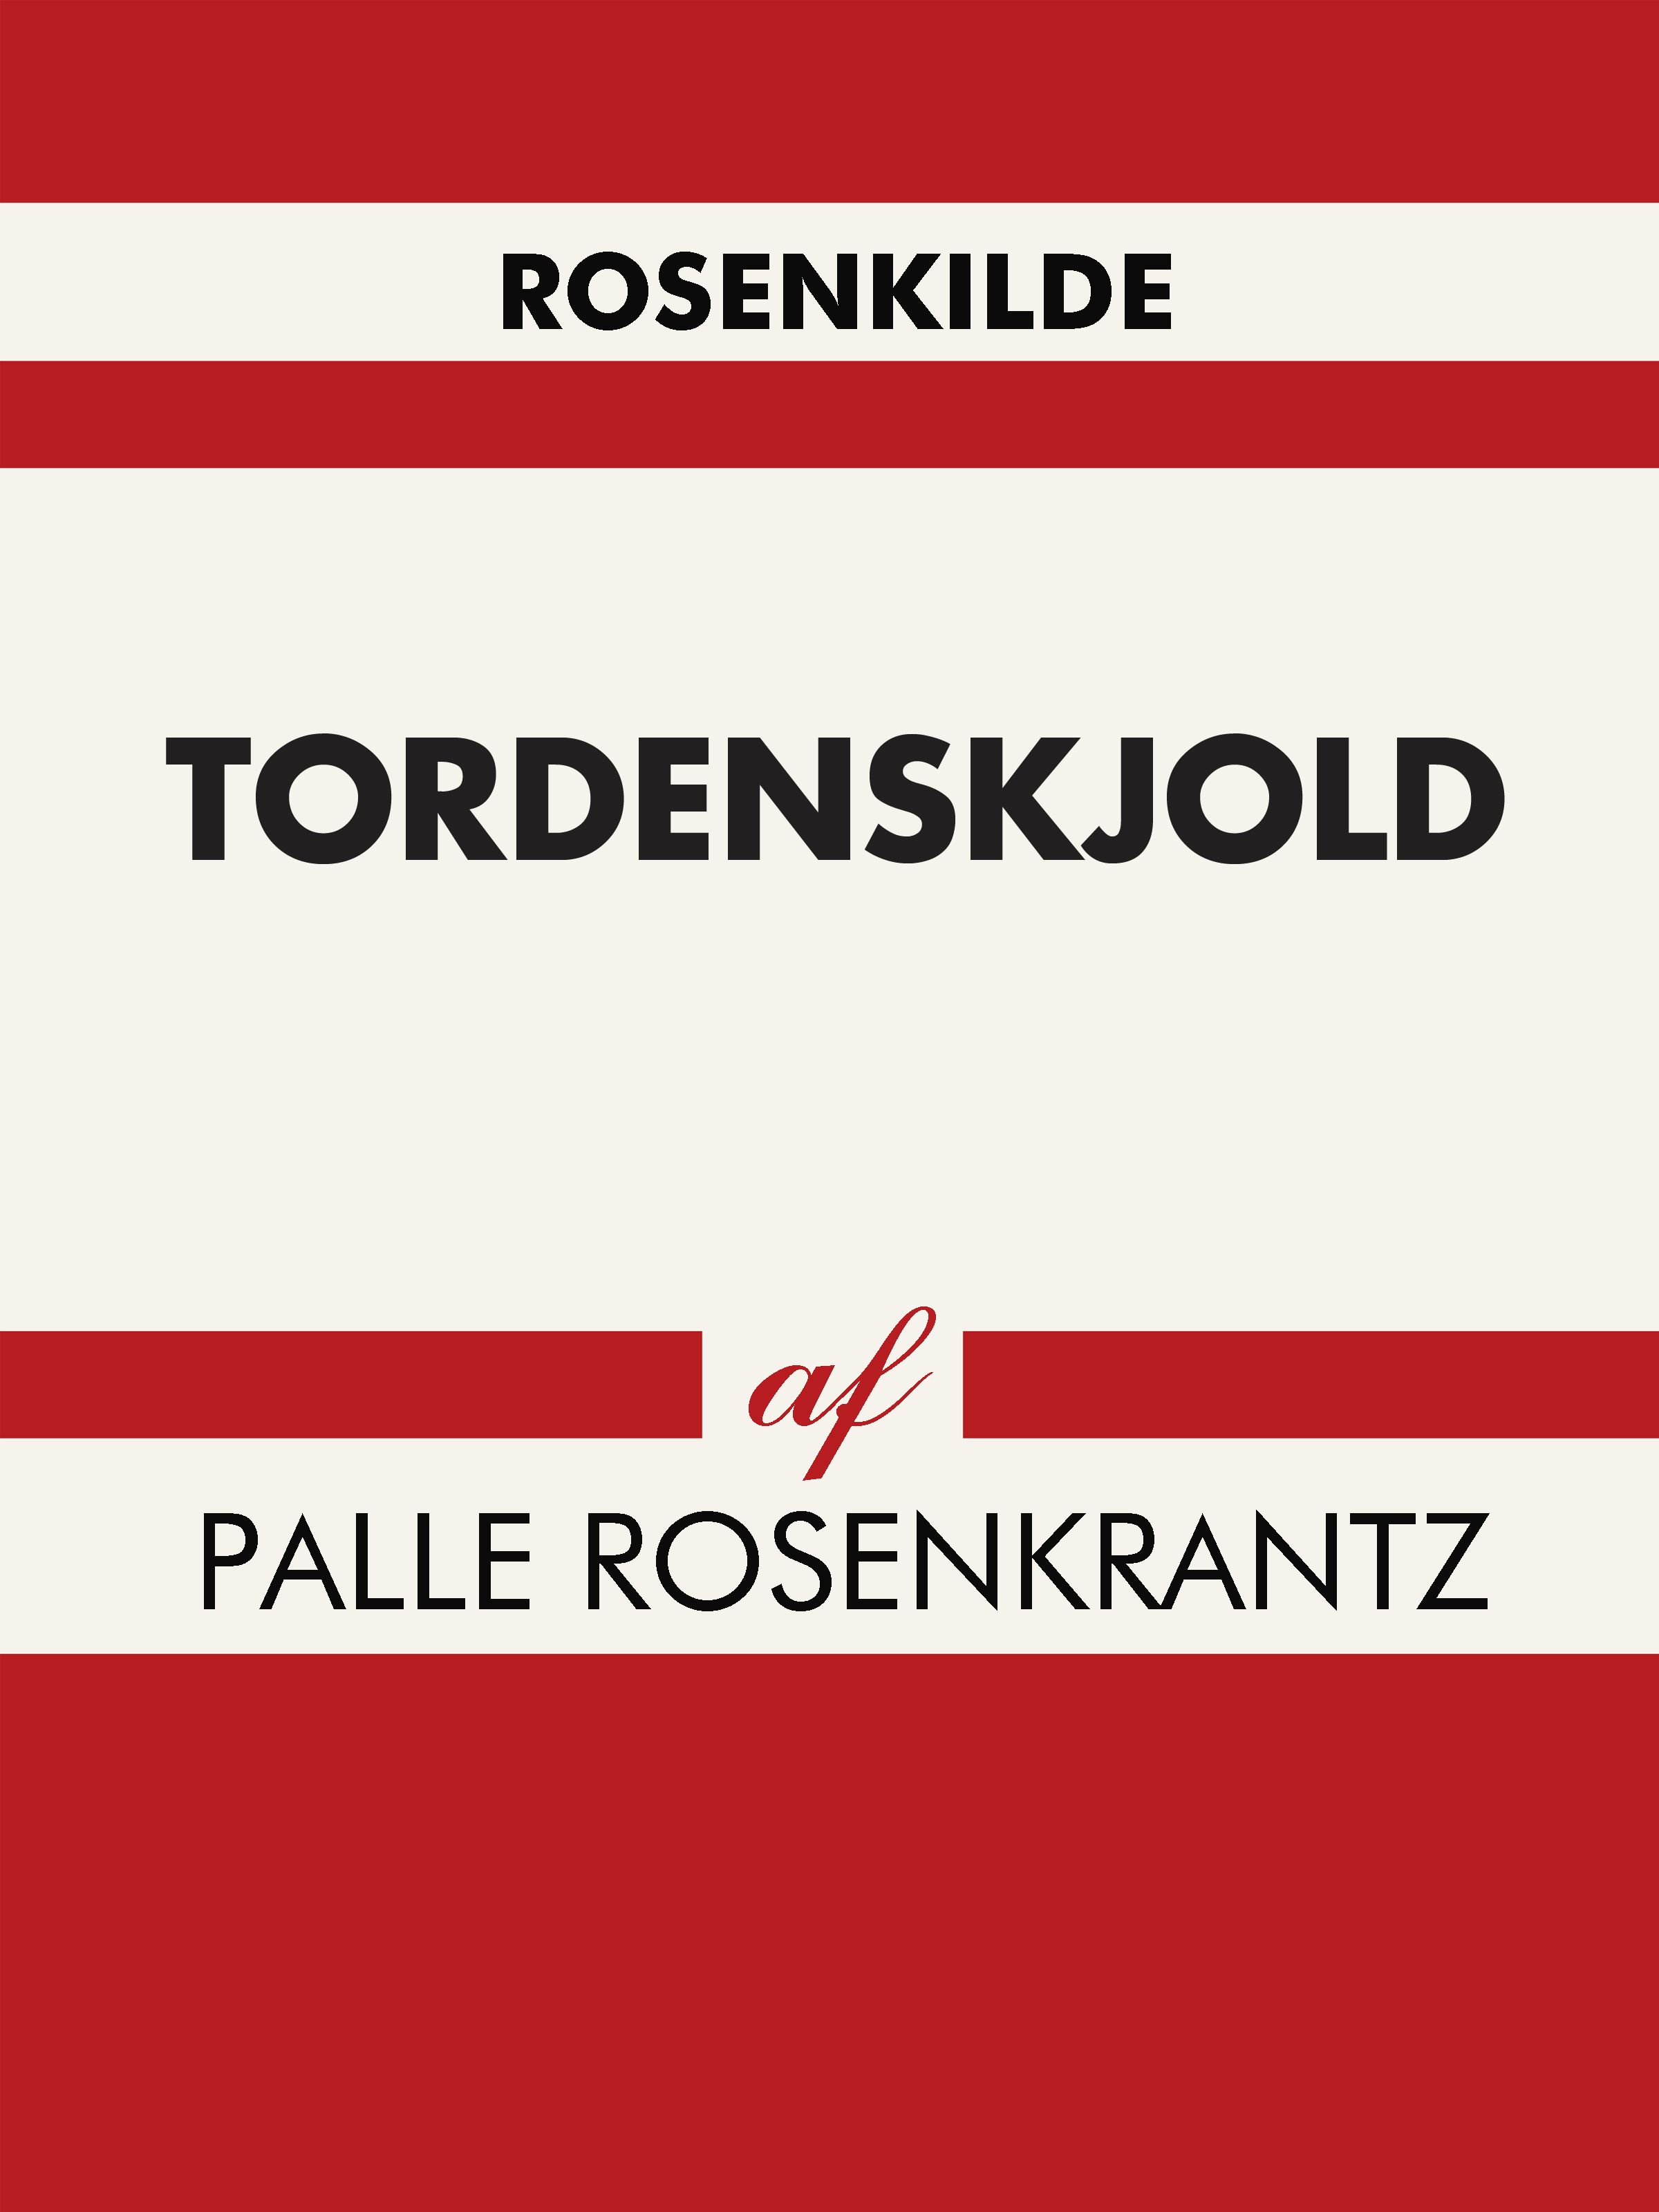 Tordenskjold, e-bog af Palle Rosenkrantz